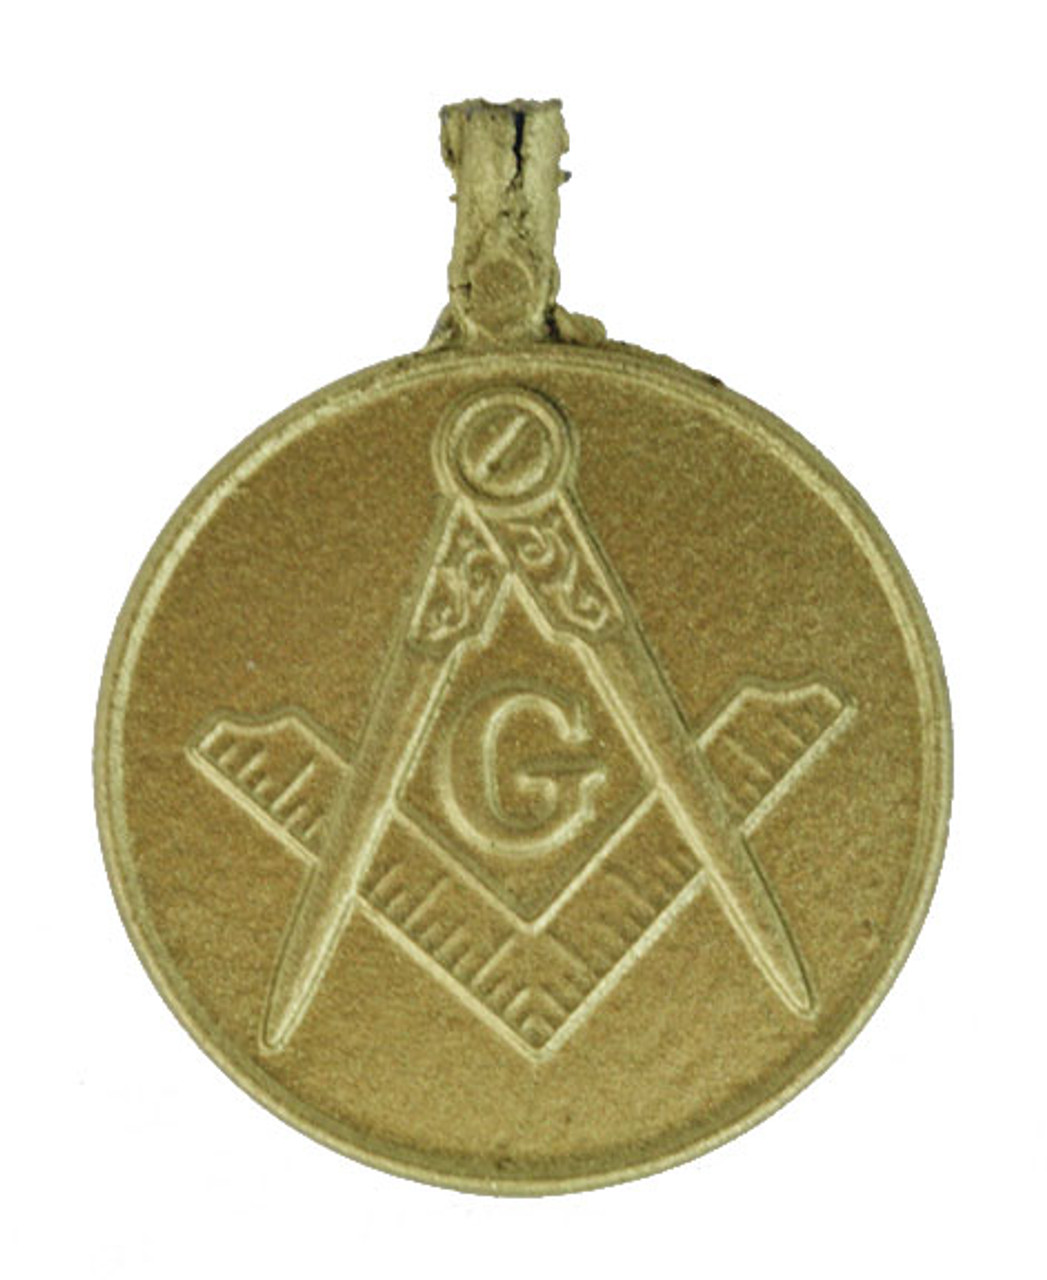 1" Shriners medallion